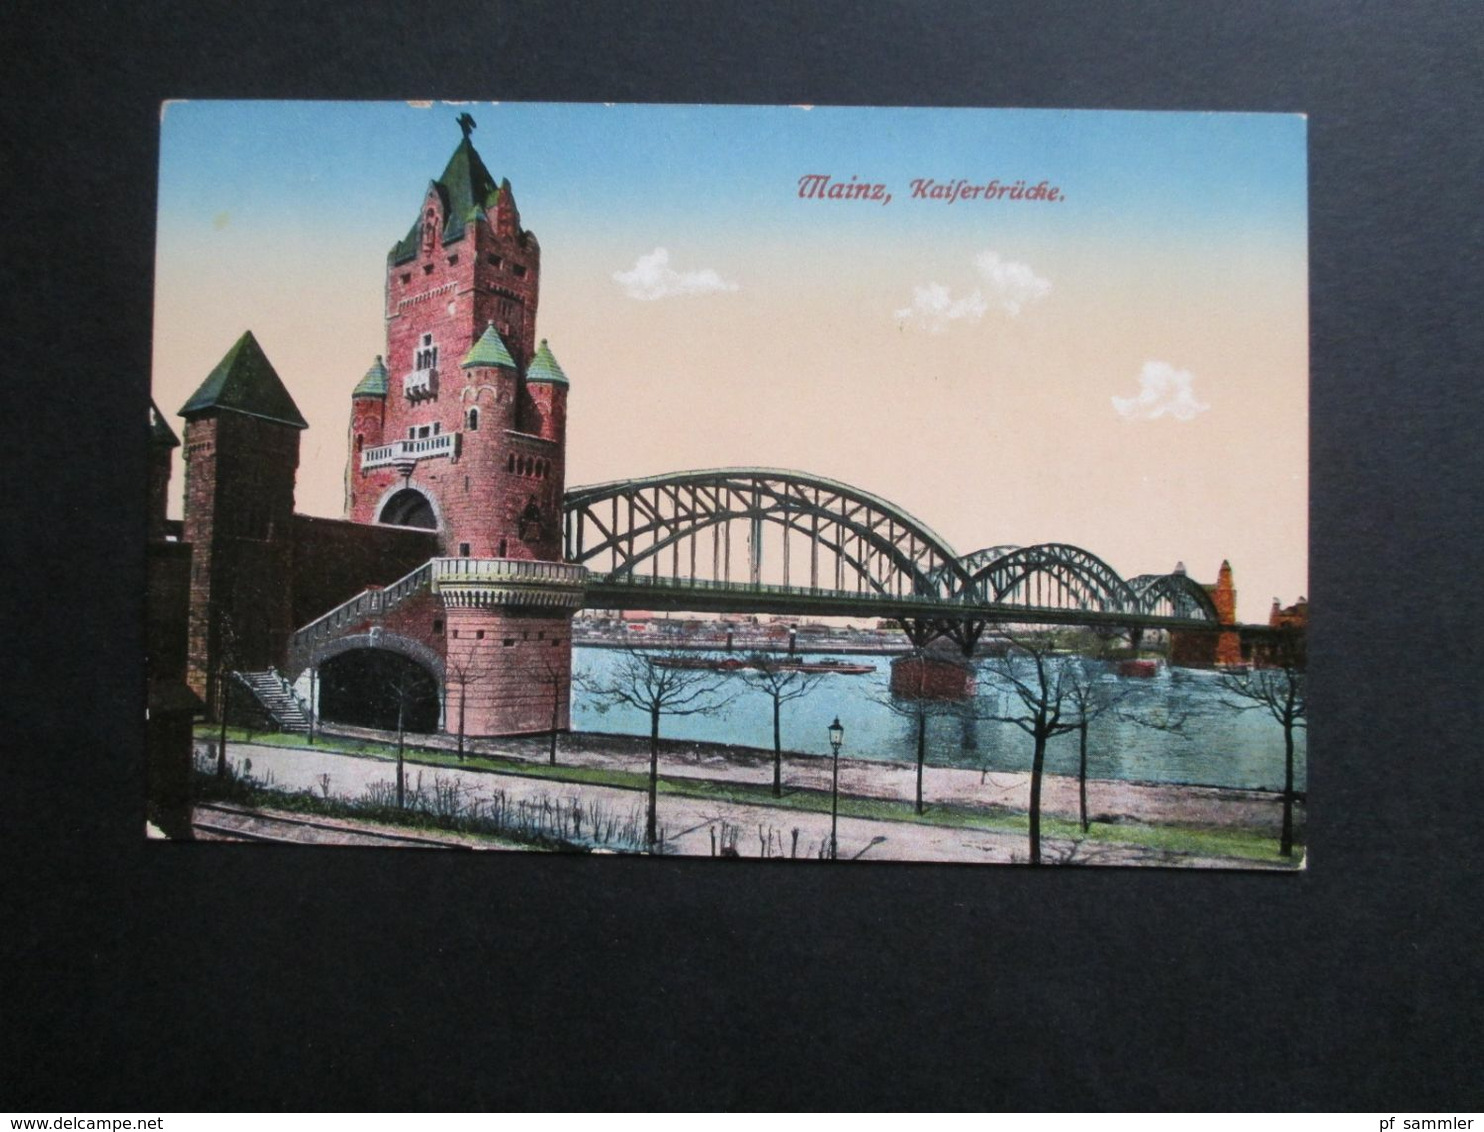 AK Deutsches Reich um 1910 Mainz verschiedene Ansichten! 9 Ansichtskarten ungebraucht!